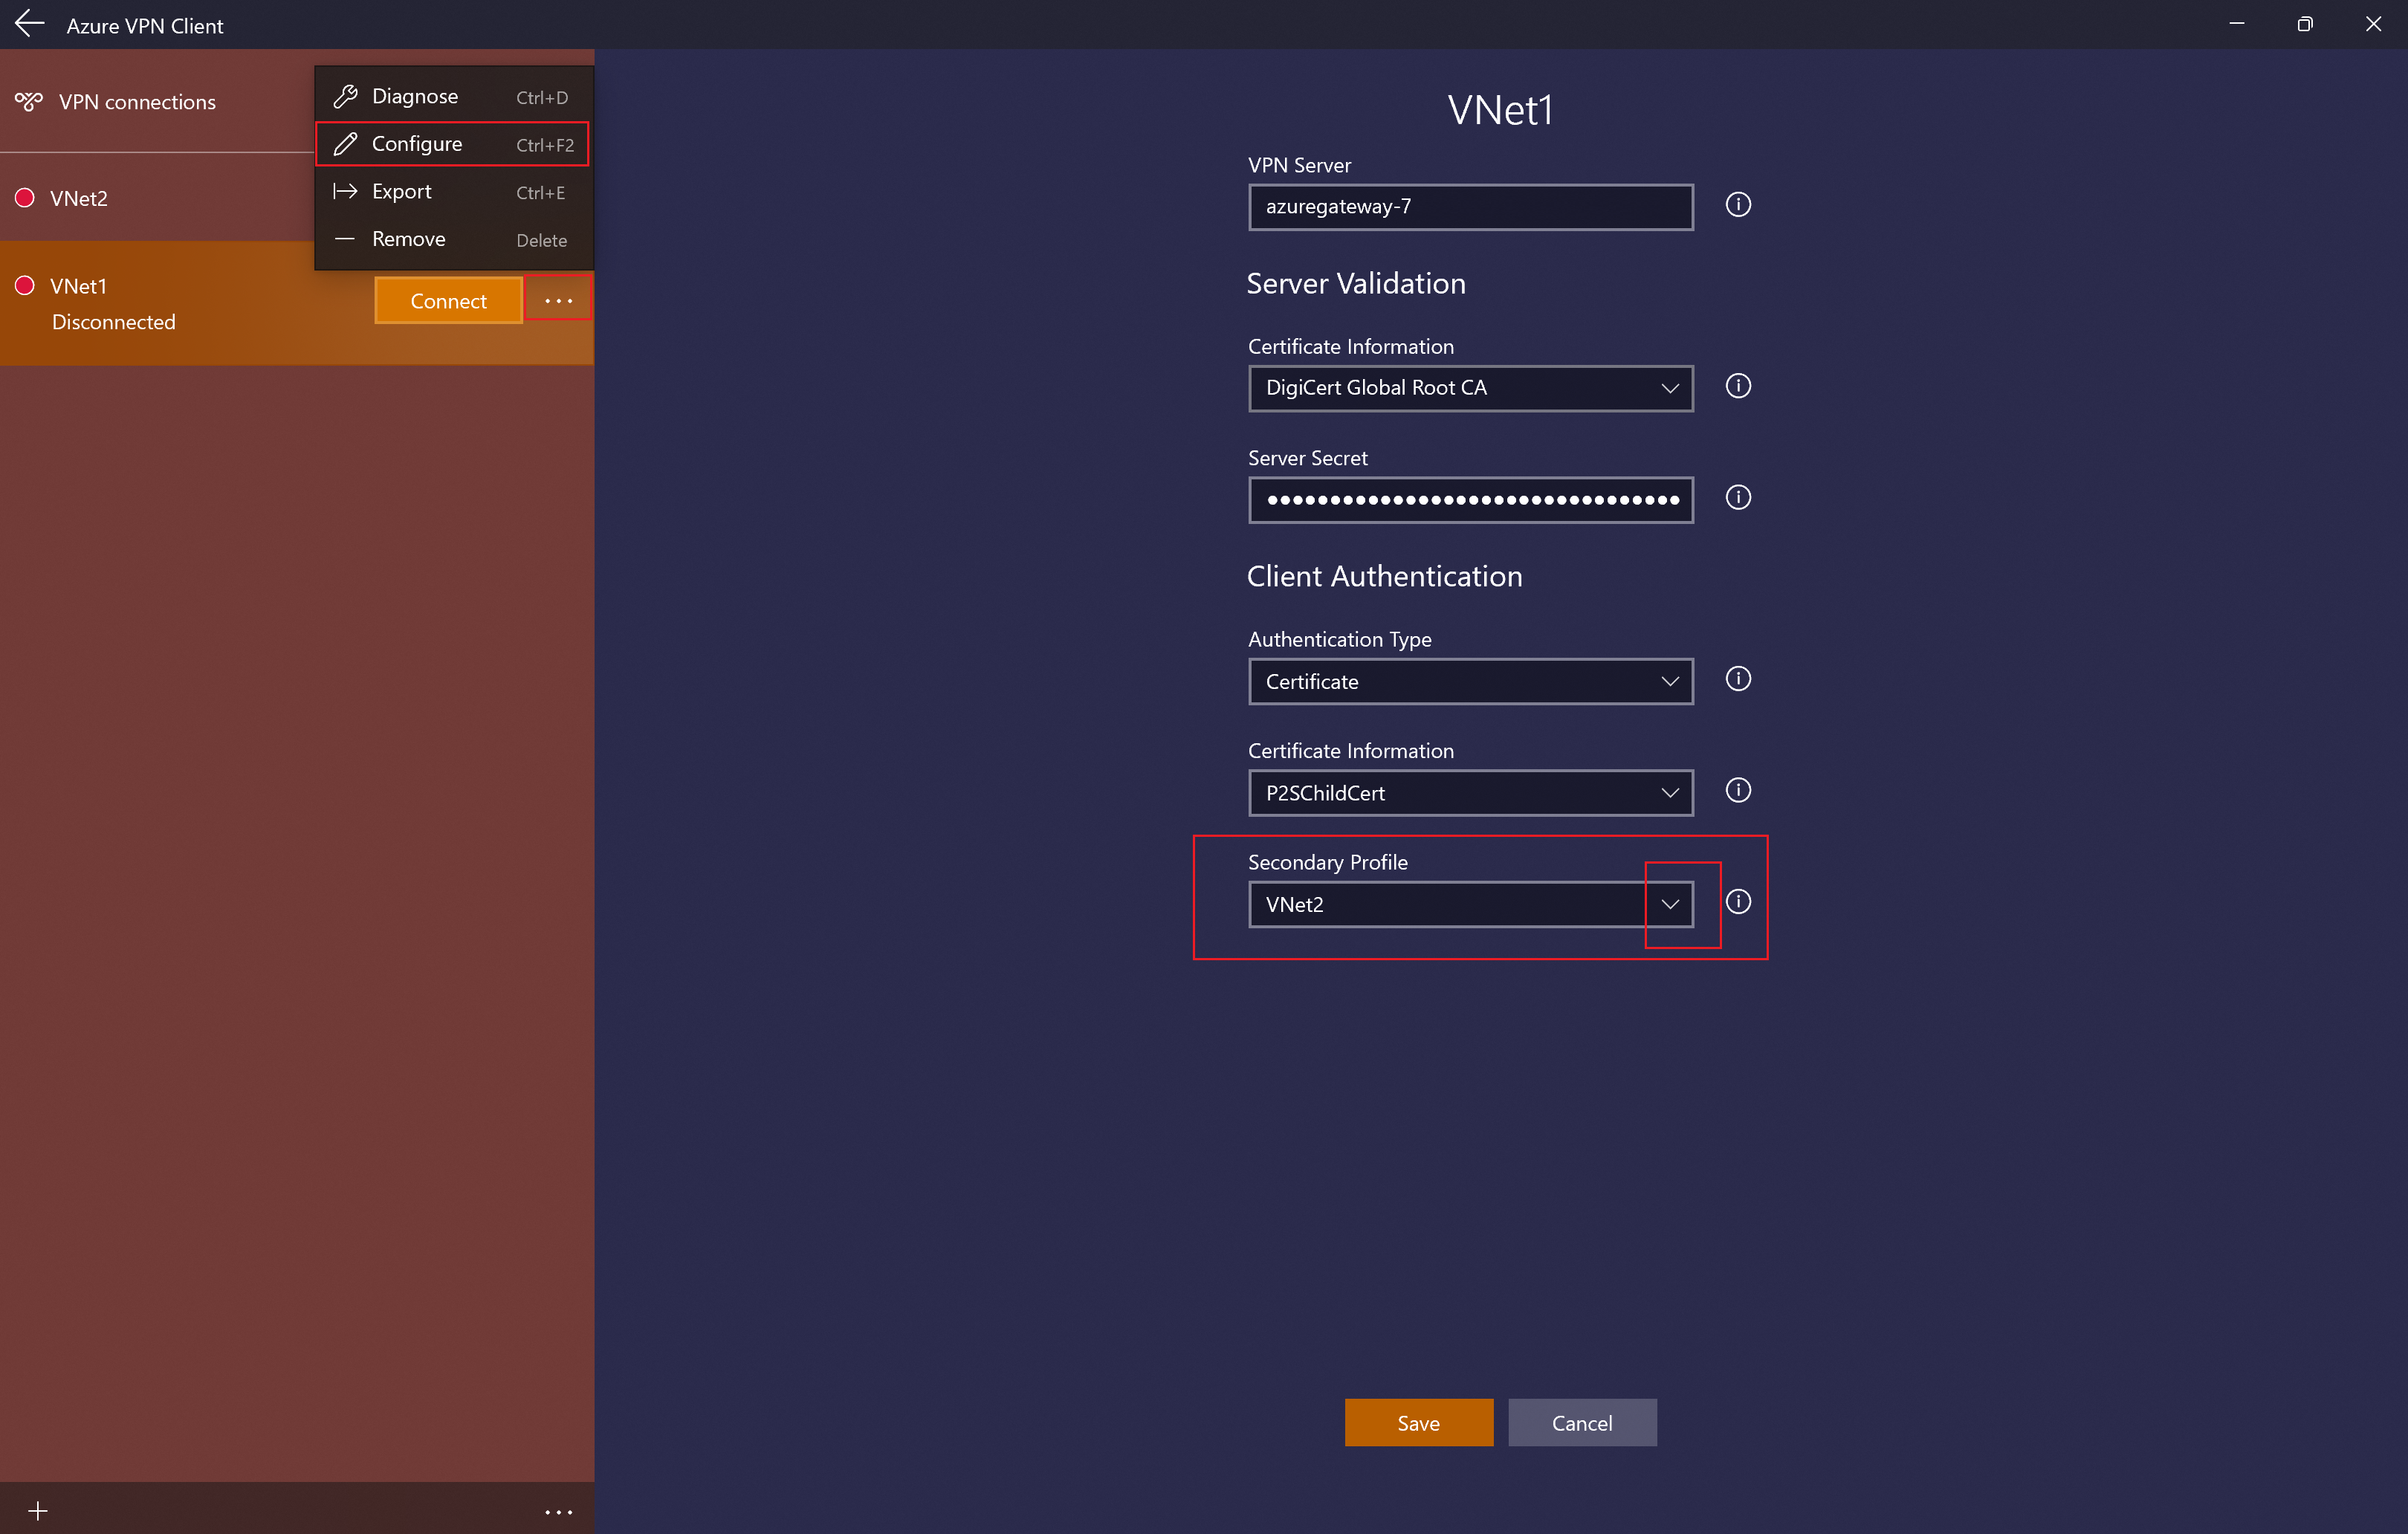 Captura de ecrã a mostrar a página de configuração do perfil do cliente VPN do Azure com perfil secundário.